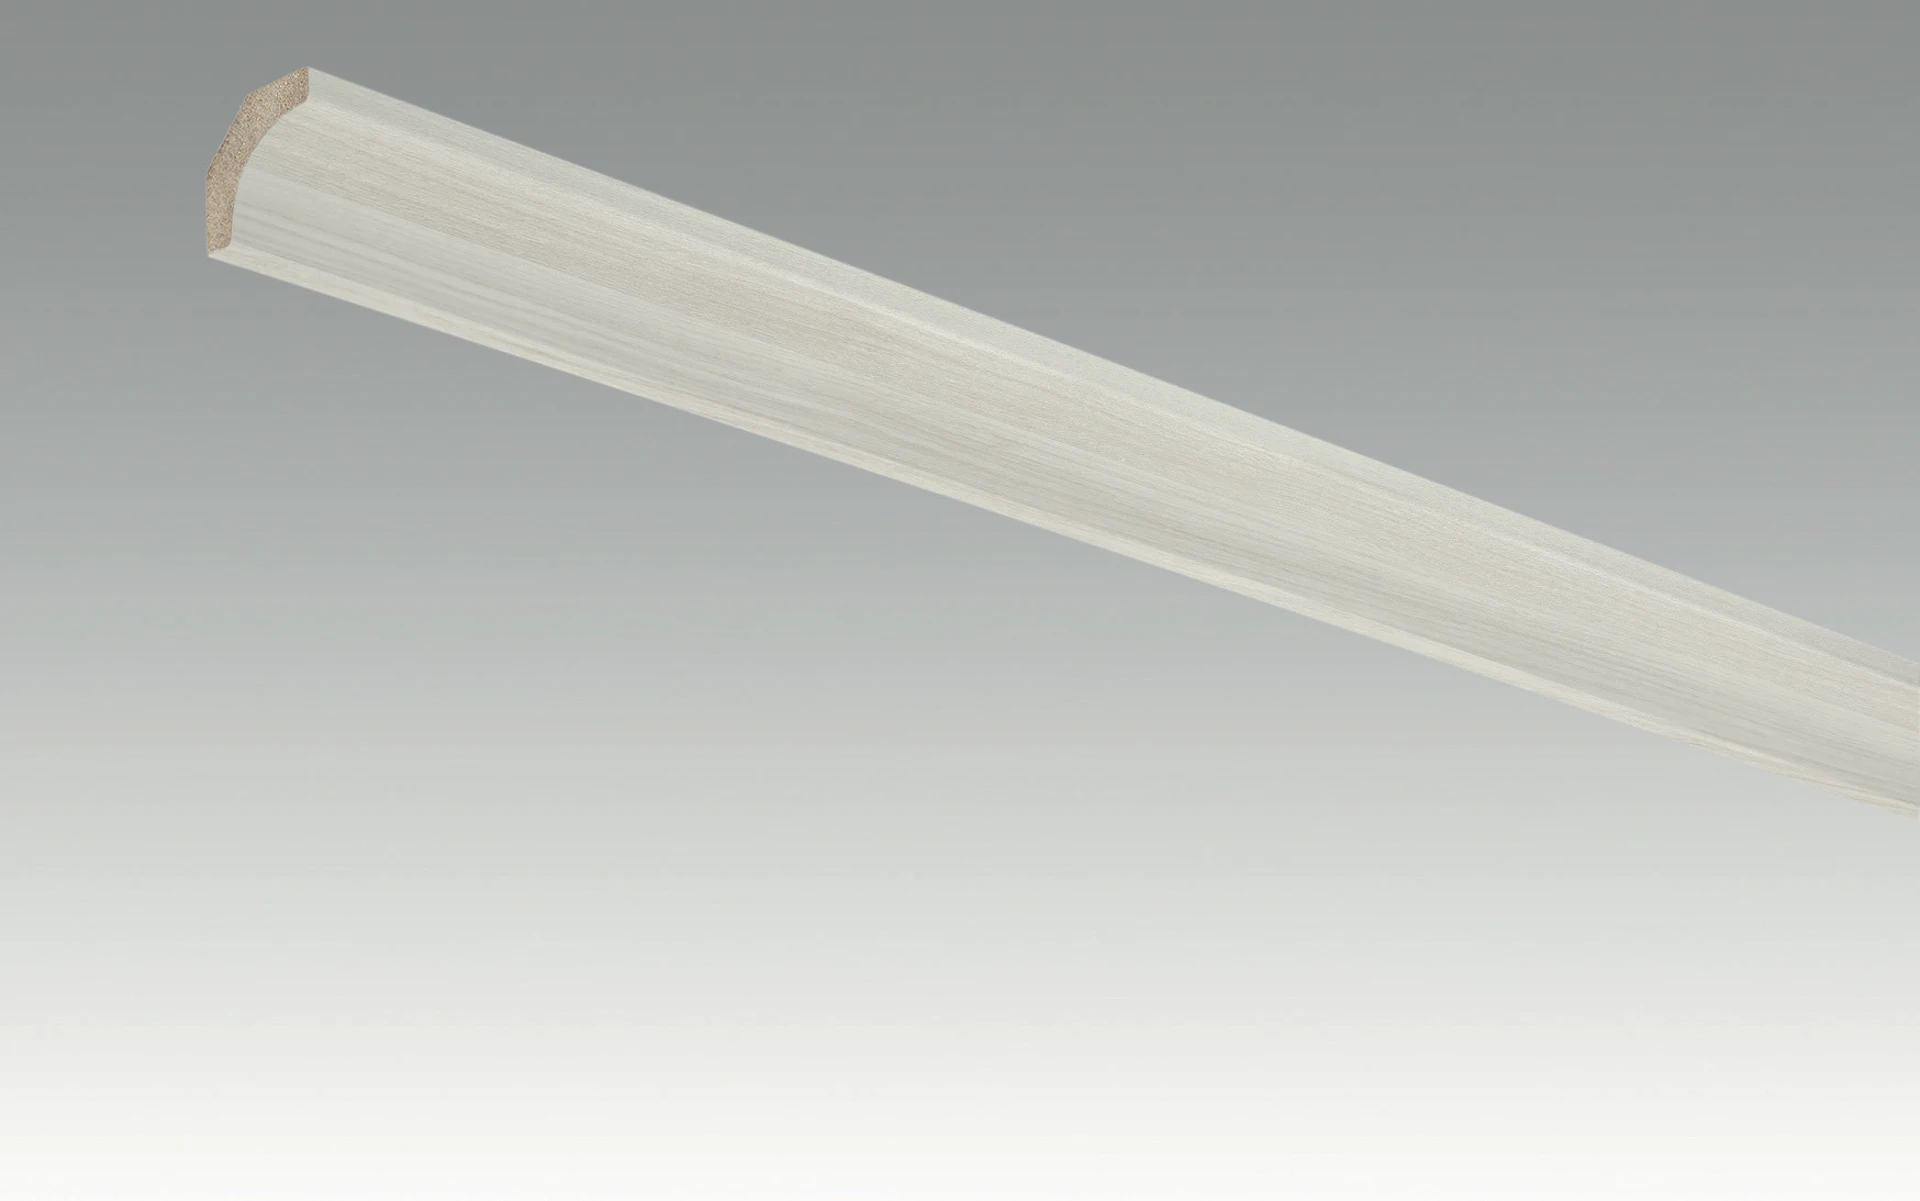 Battiscopa MEISTER con rivestimento in frassino grigio 4097 - 2380 x 22 x 22 mm (200034-2380-04097)